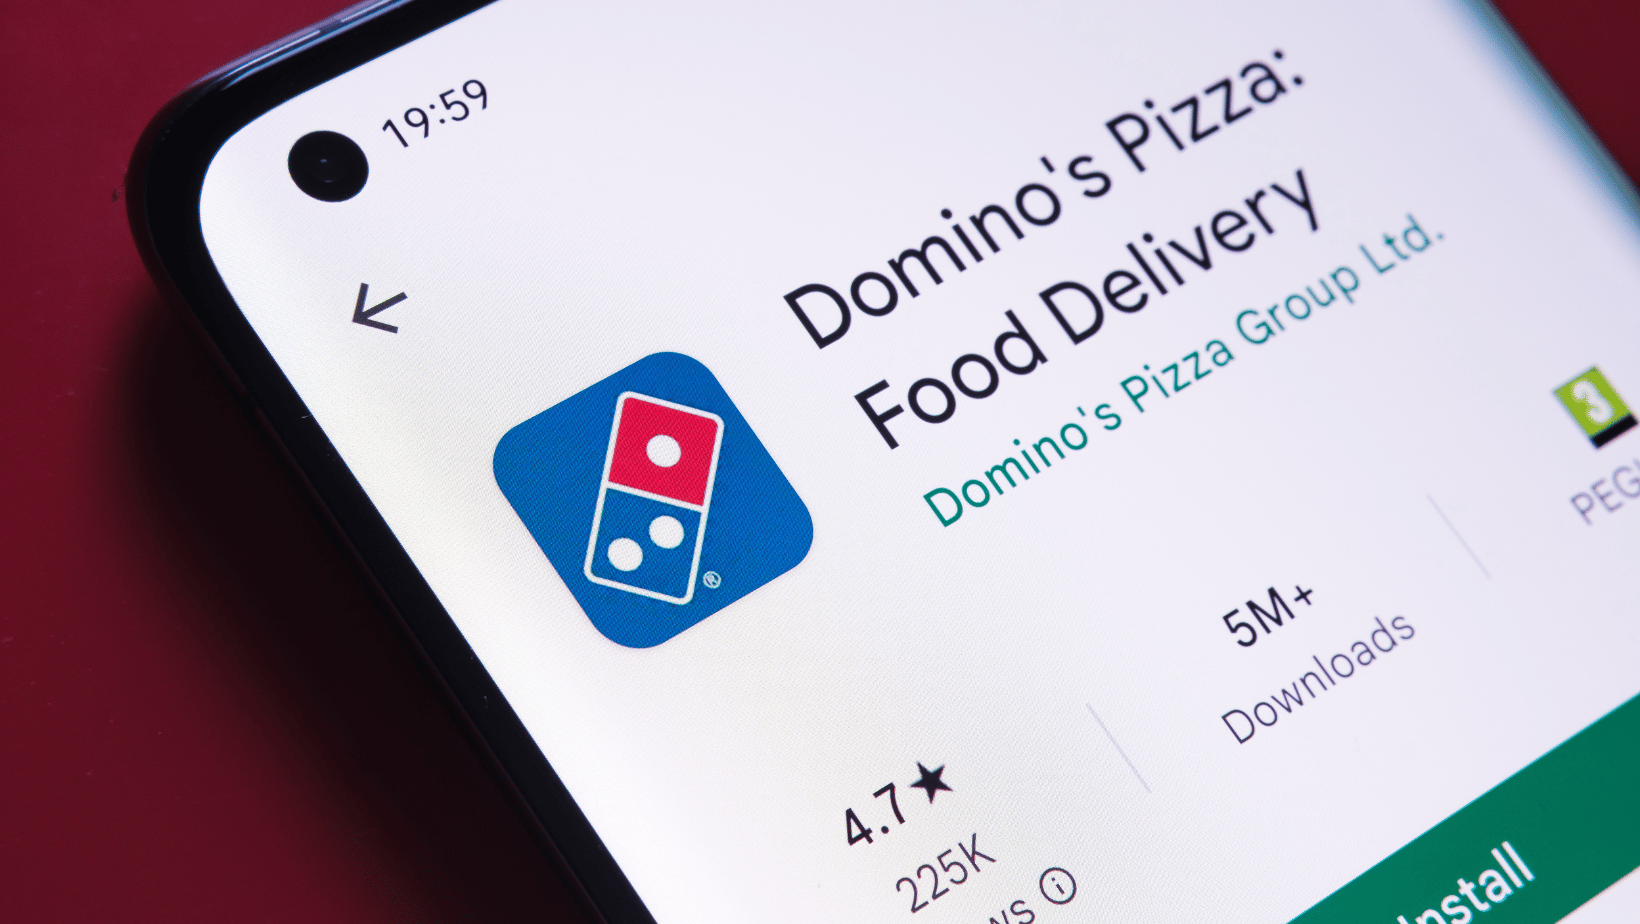 Dominos Pizza app